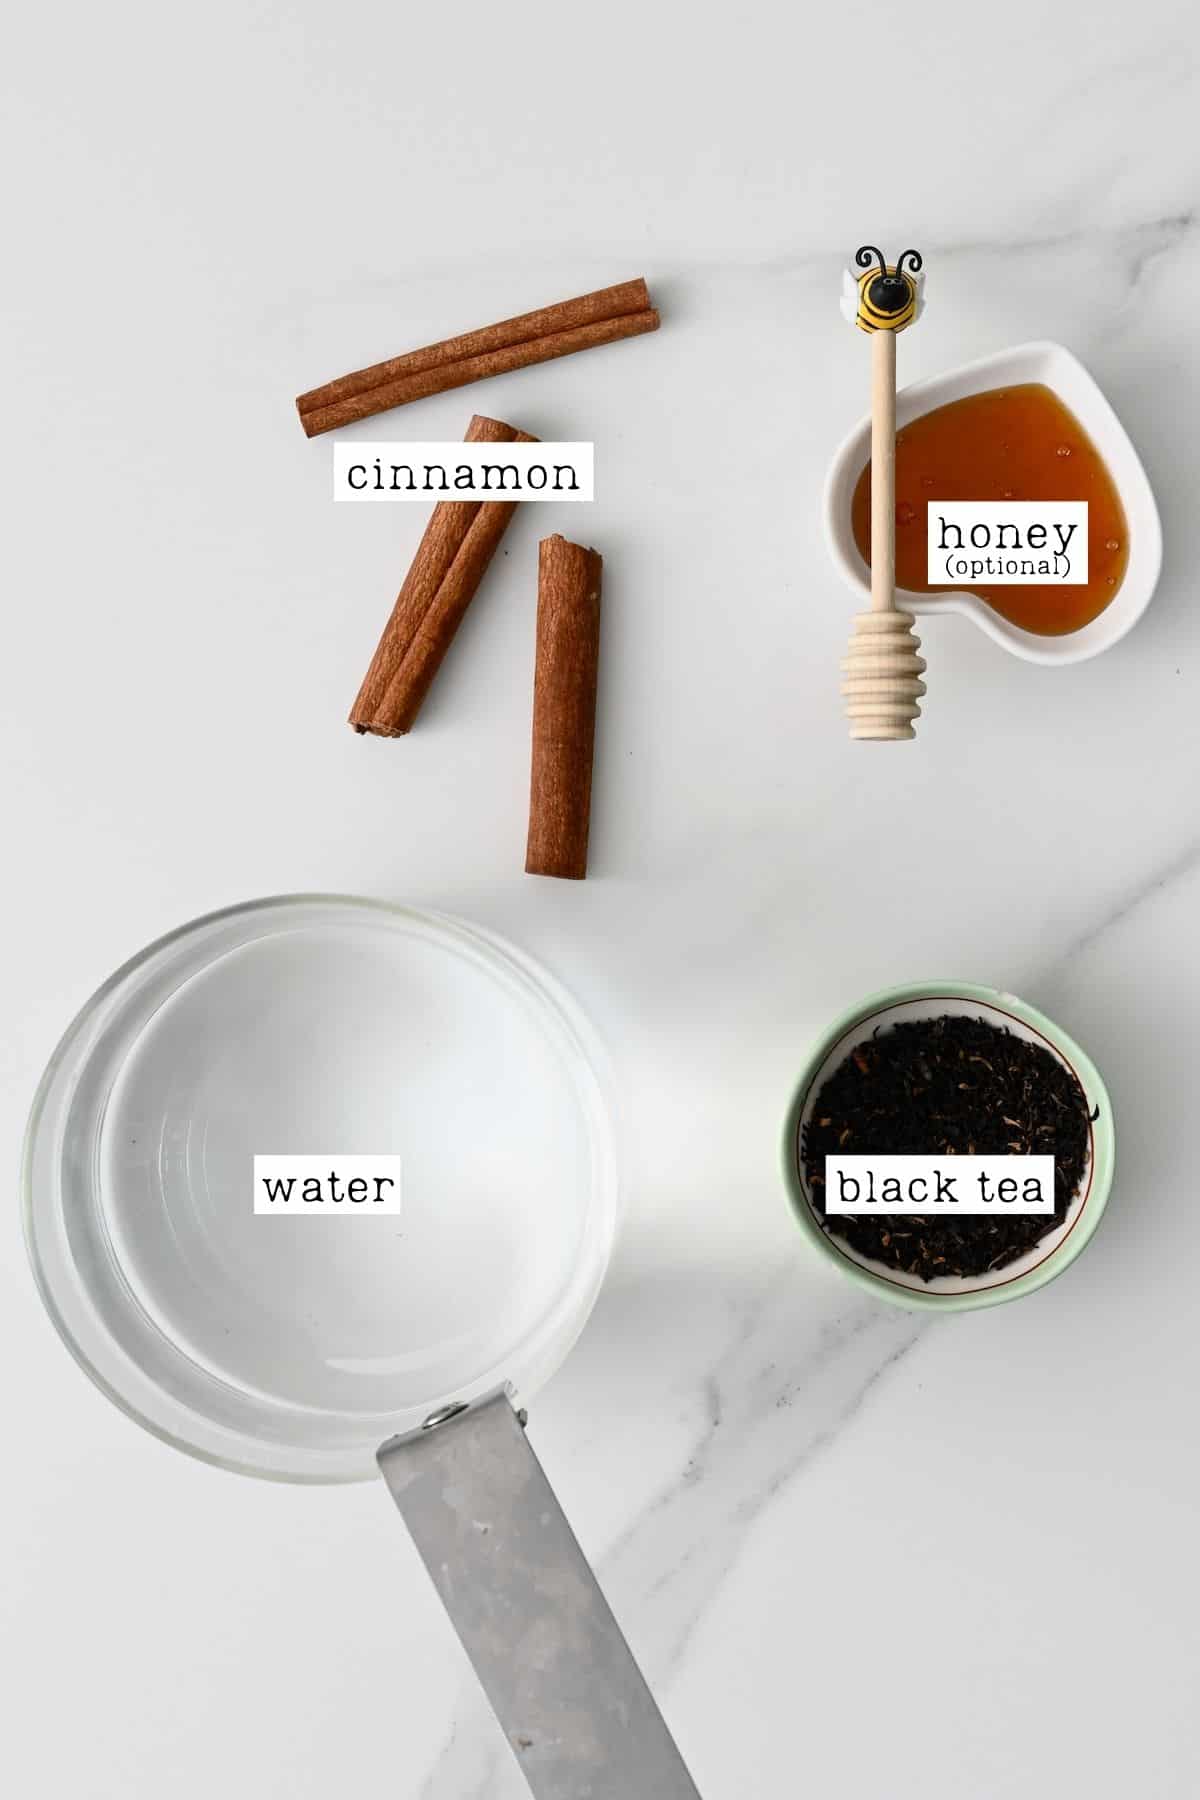 Ingredients for cinnamon tea